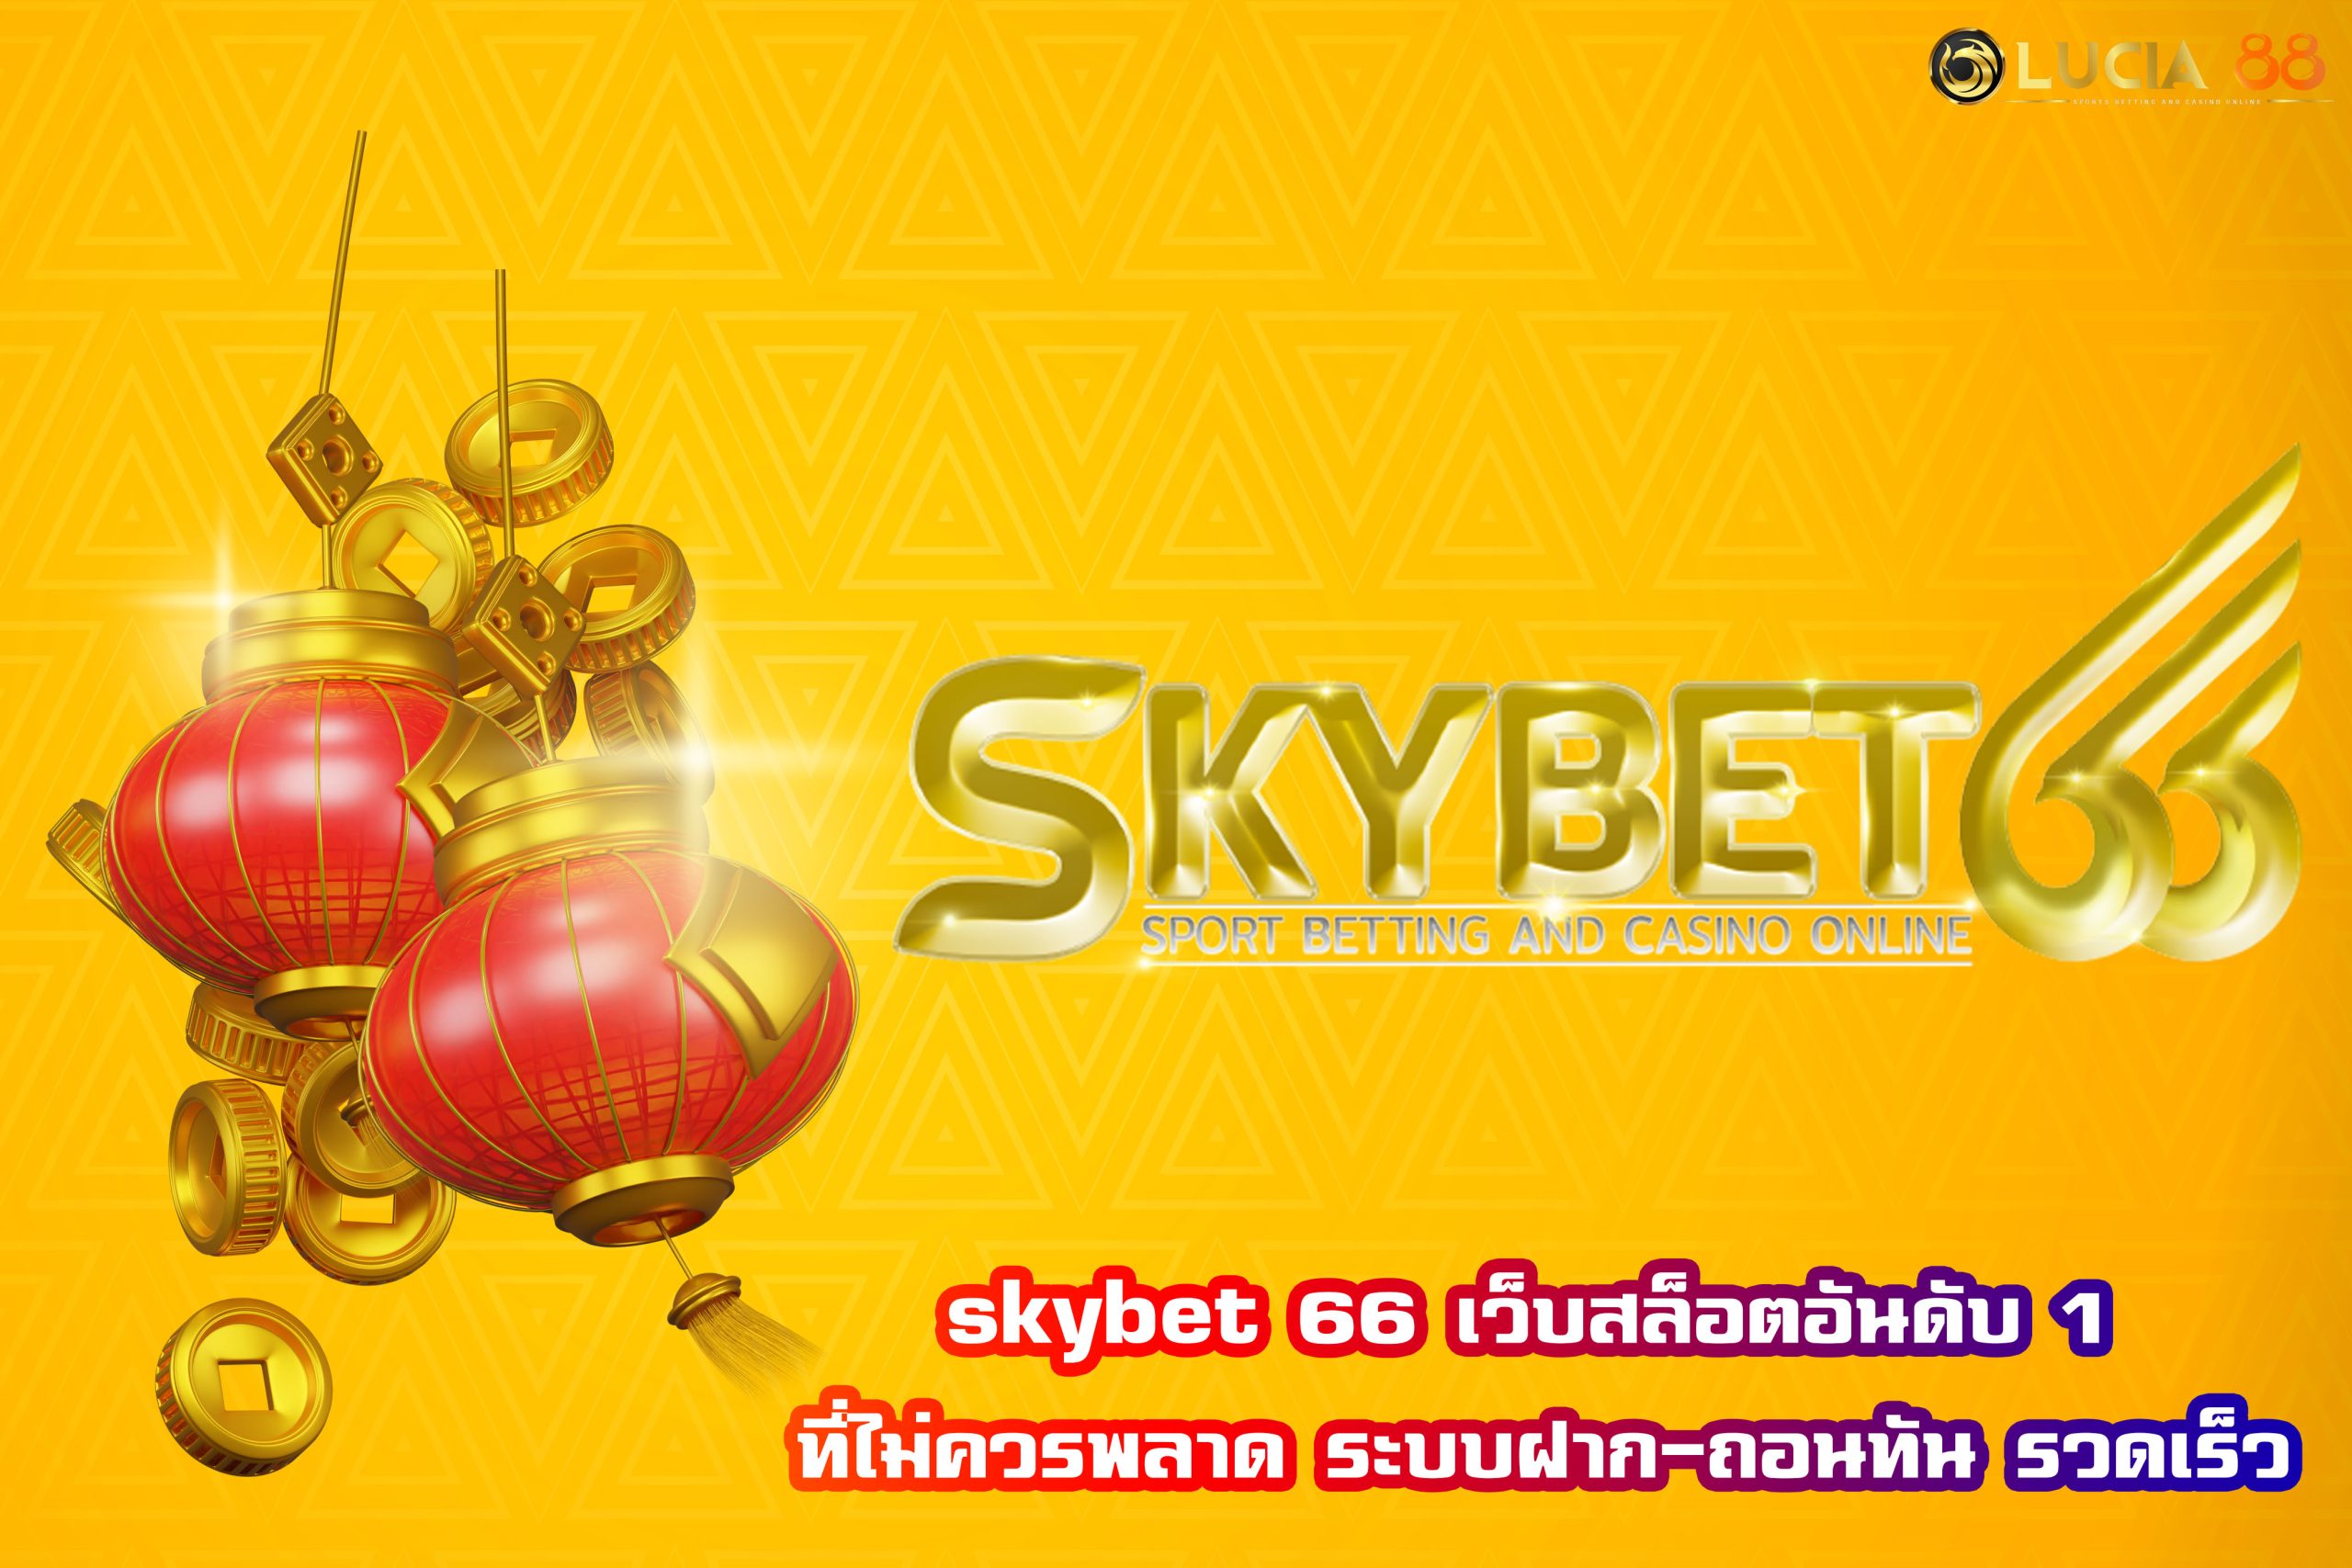 skybet 66 เว็บสล็อตอันดับ 1 ที่ไม่ควรพลาด ระบบฝาก-ถอนทัน รวดเร็ว